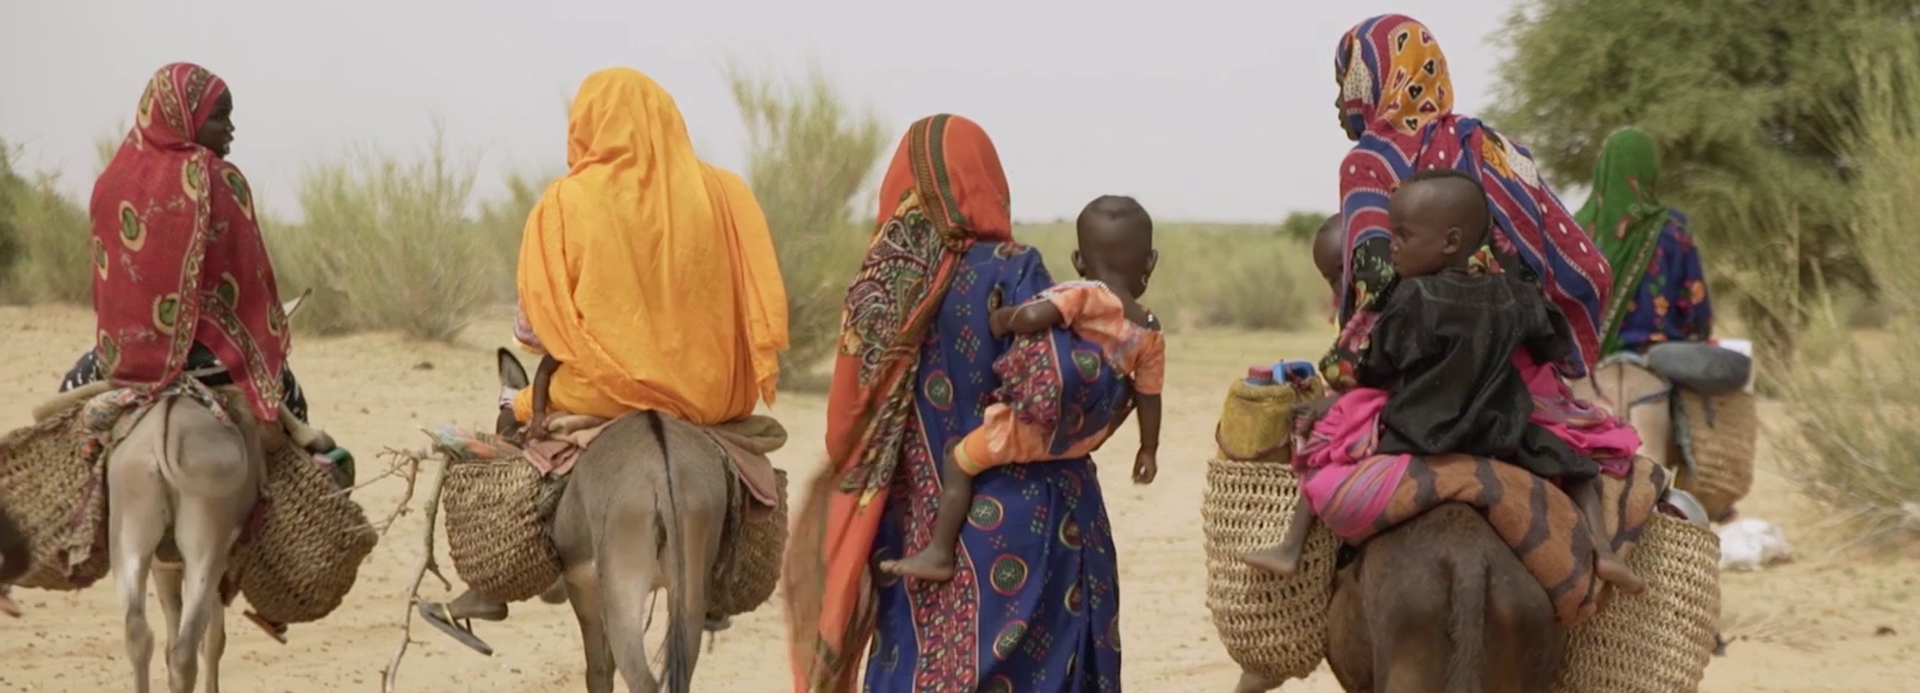 Frauen im Tschad laufen durch den Sand.